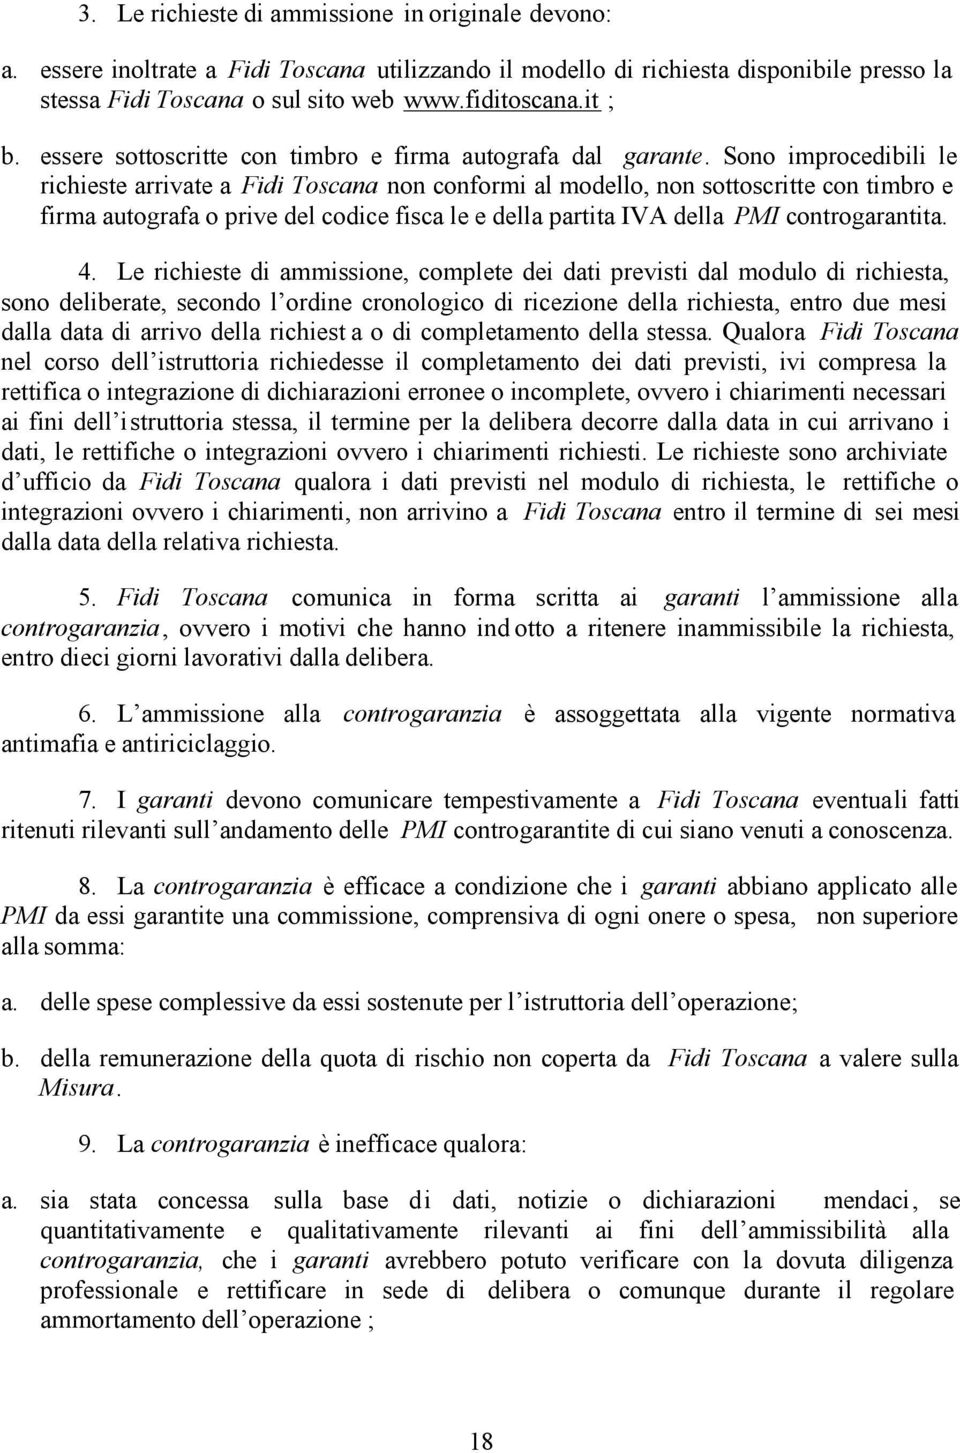 Sono improcedibili le richieste arrivate a Fidi Toscana non conformi al modello, non sottoscritte con timbro e firma autografa o prive del codice fisca le e della partita IVA della PMI